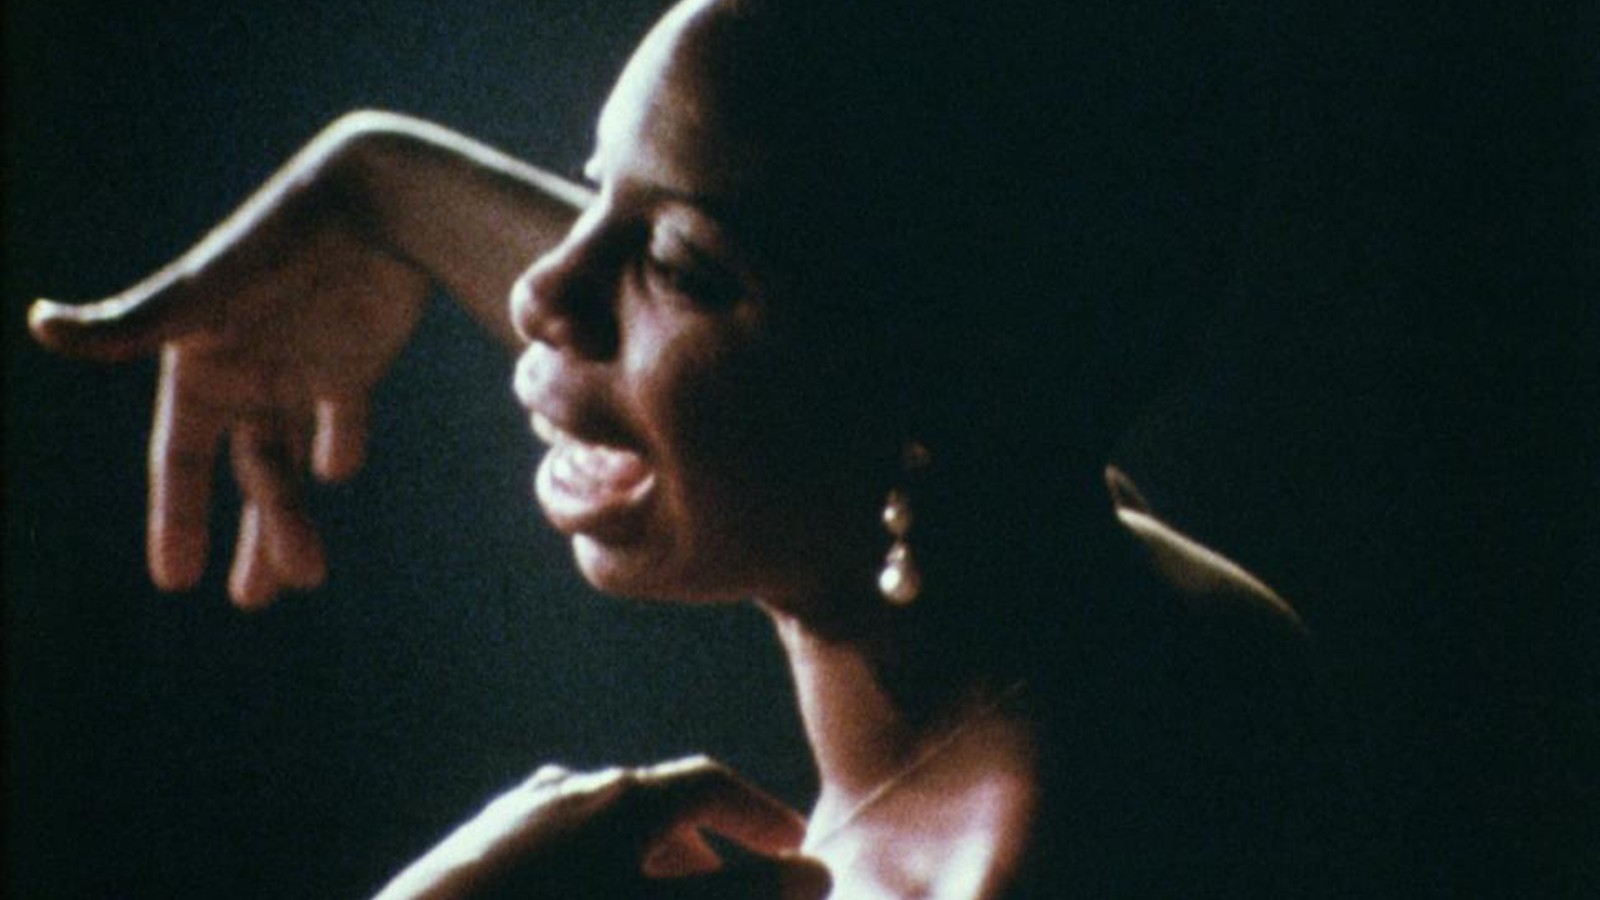 Nina Simone: a look into her life